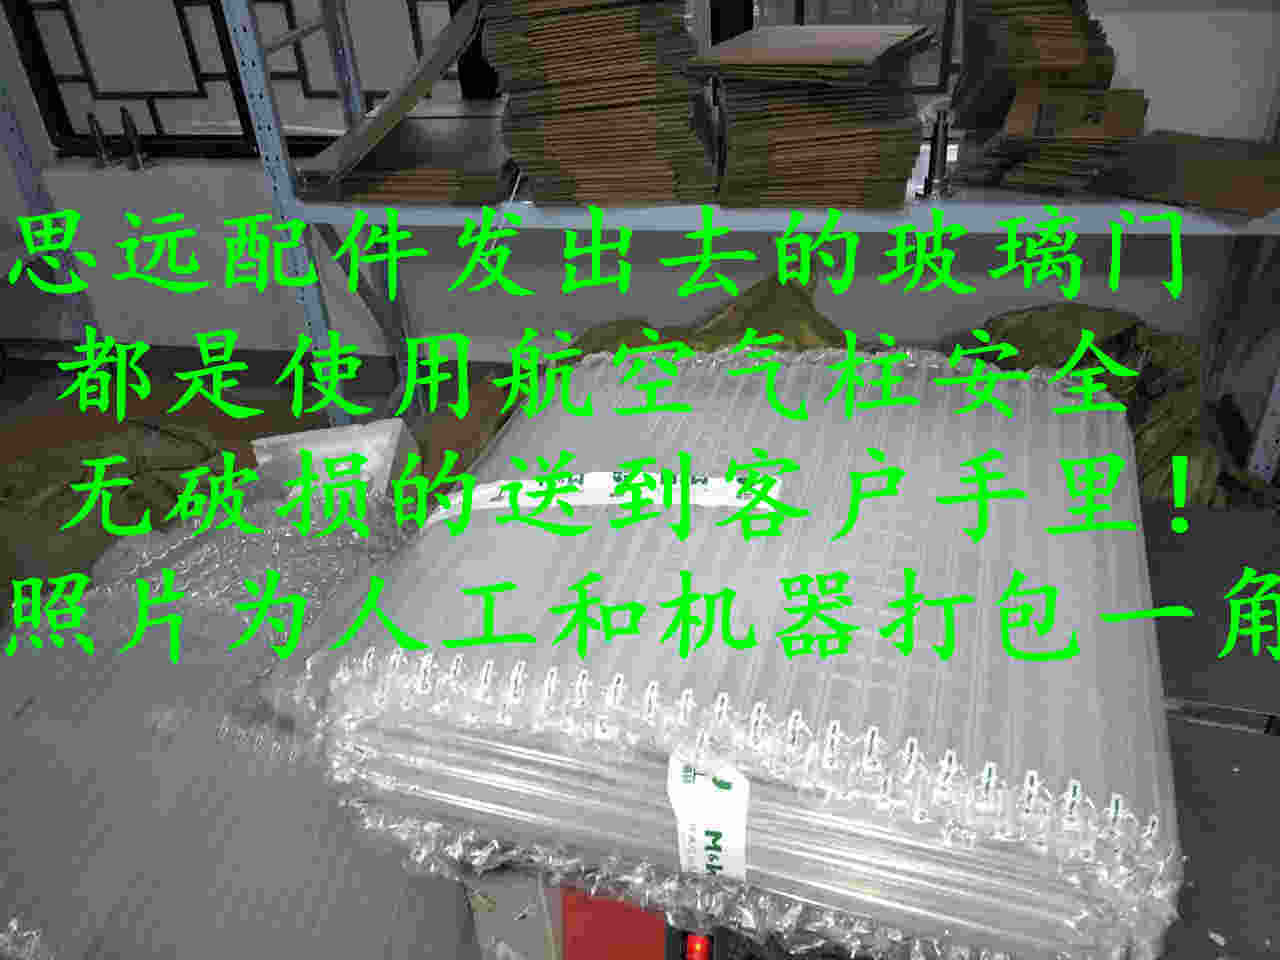 上海思远电器配件拆机店